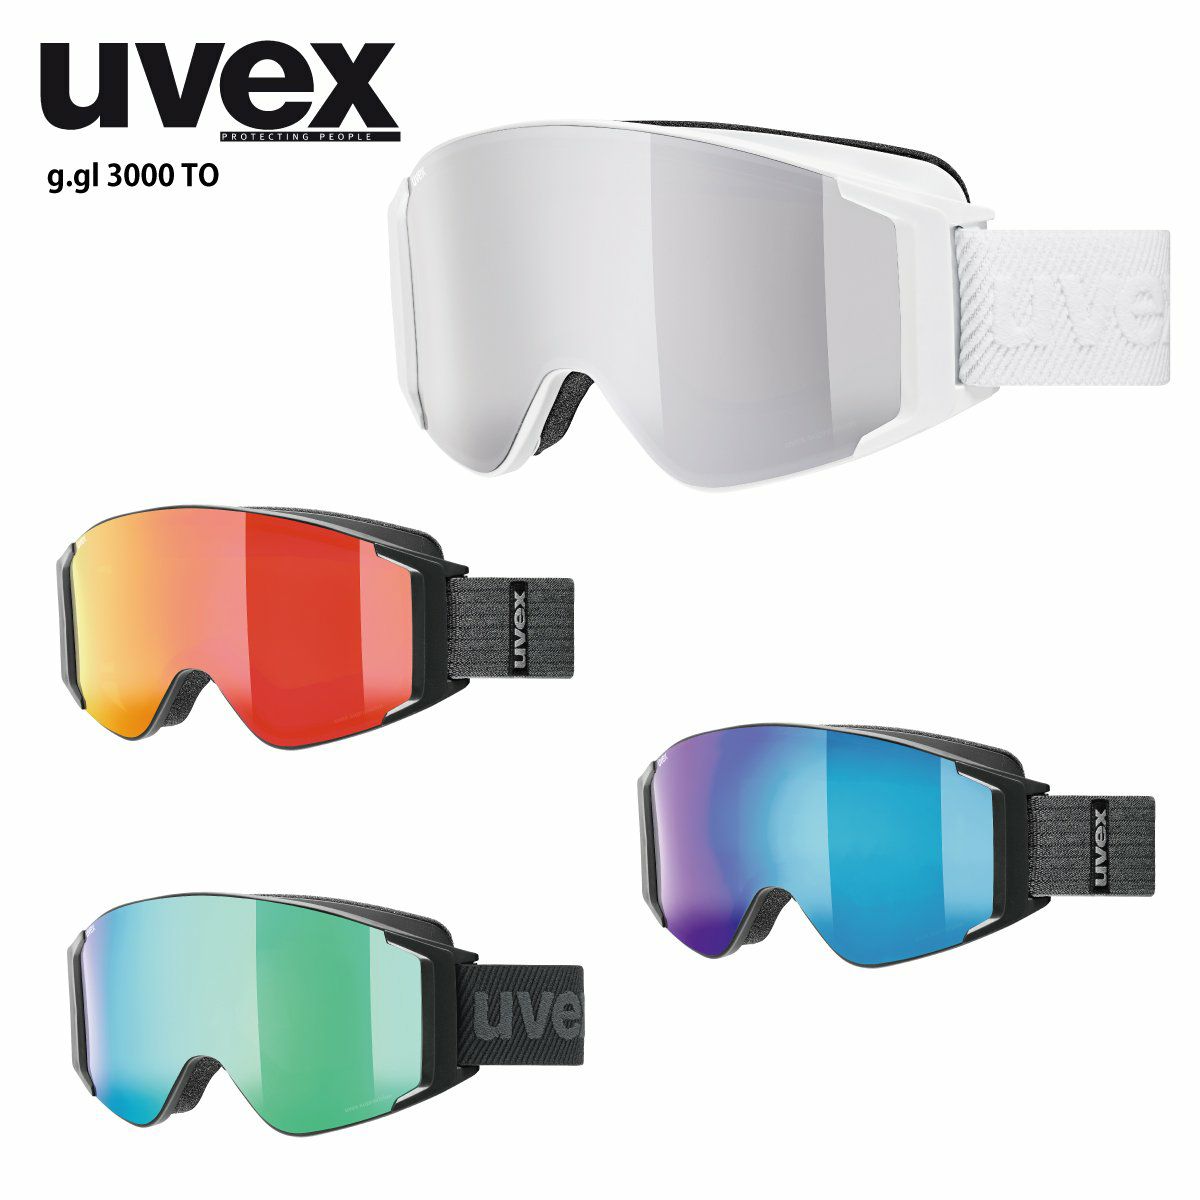 ウベックス(Uvex) スキースノーボードゴーグル ユニセックス 調光ミラーレンズ 眼鏡使用可能 アジアンフィット downhill 210